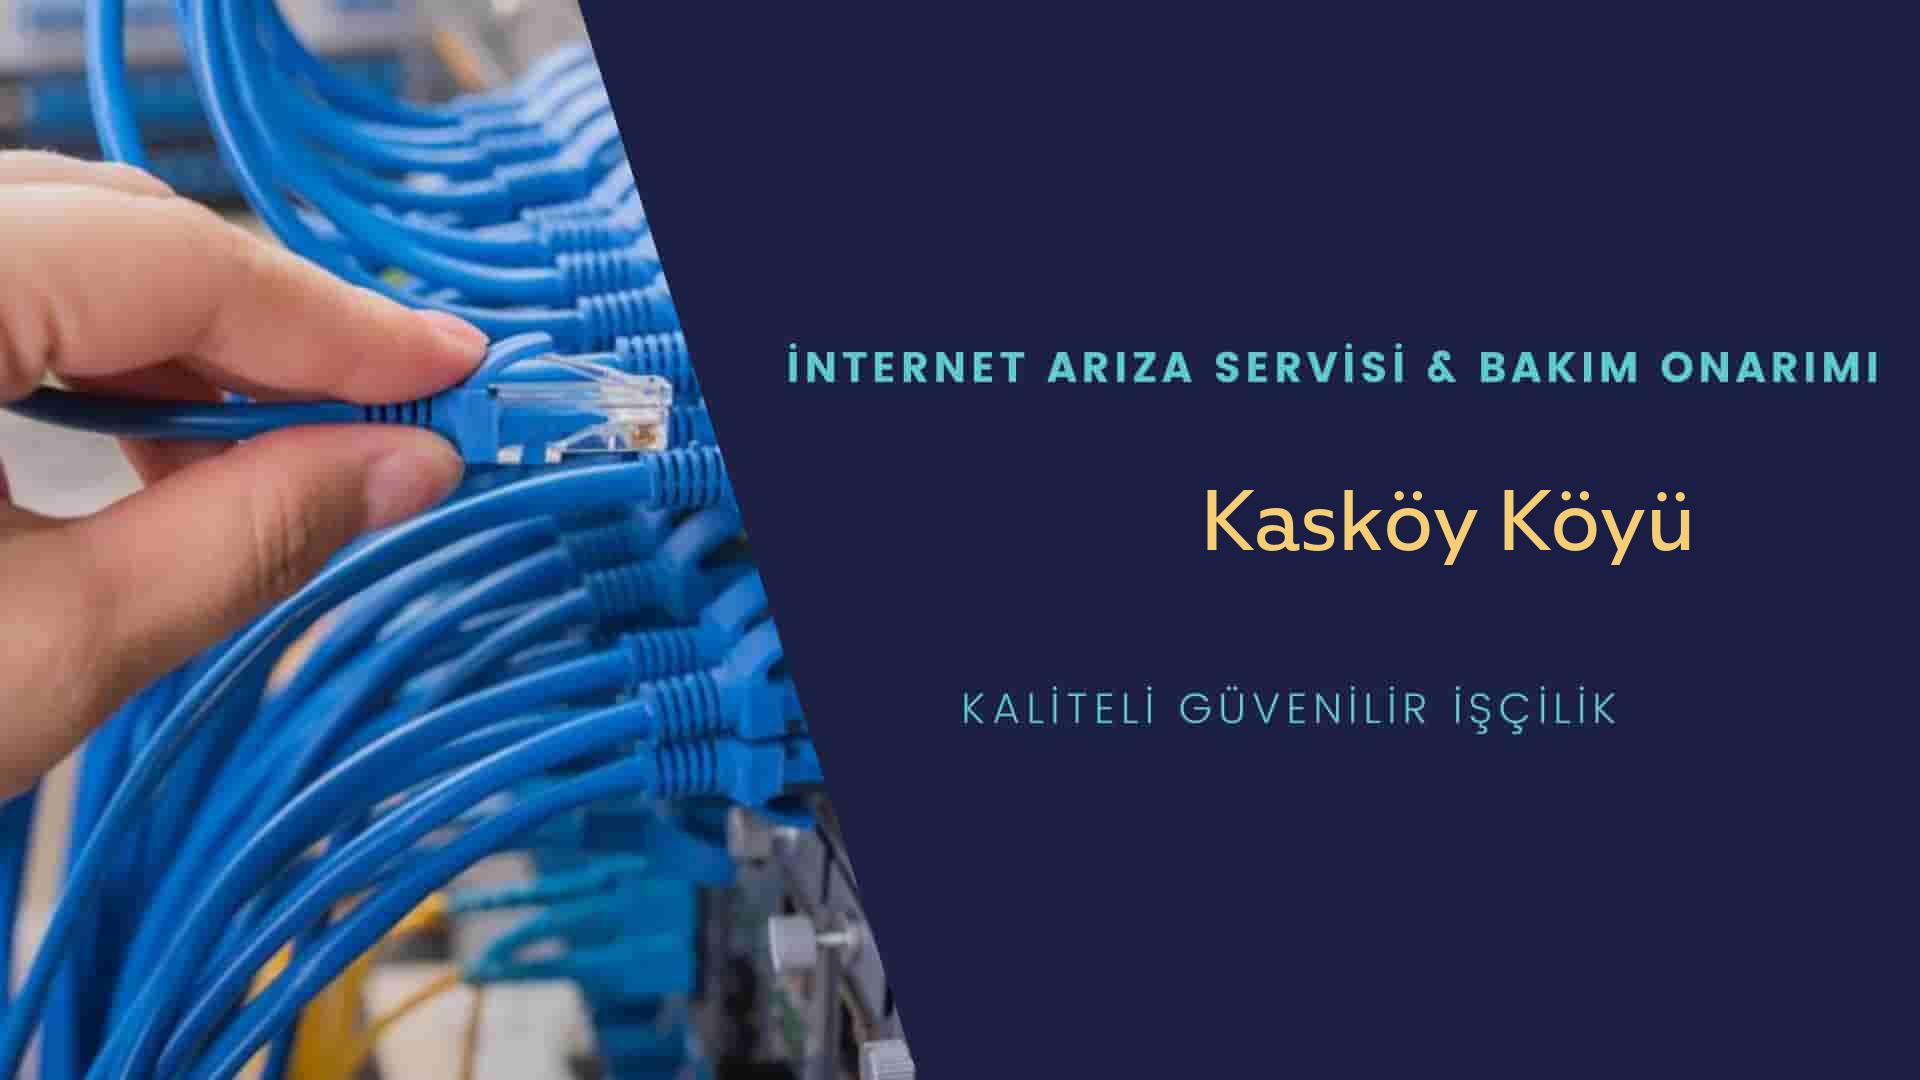 Kasköy Köyü internet kablosu çekimi yapan yerler veya elektrikçiler mi? arıyorsunuz doğru yerdesiniz o zaman sizlere 7/24 yardımcı olacak profesyonel ustalarımız bir telefon kadar yakındır size.